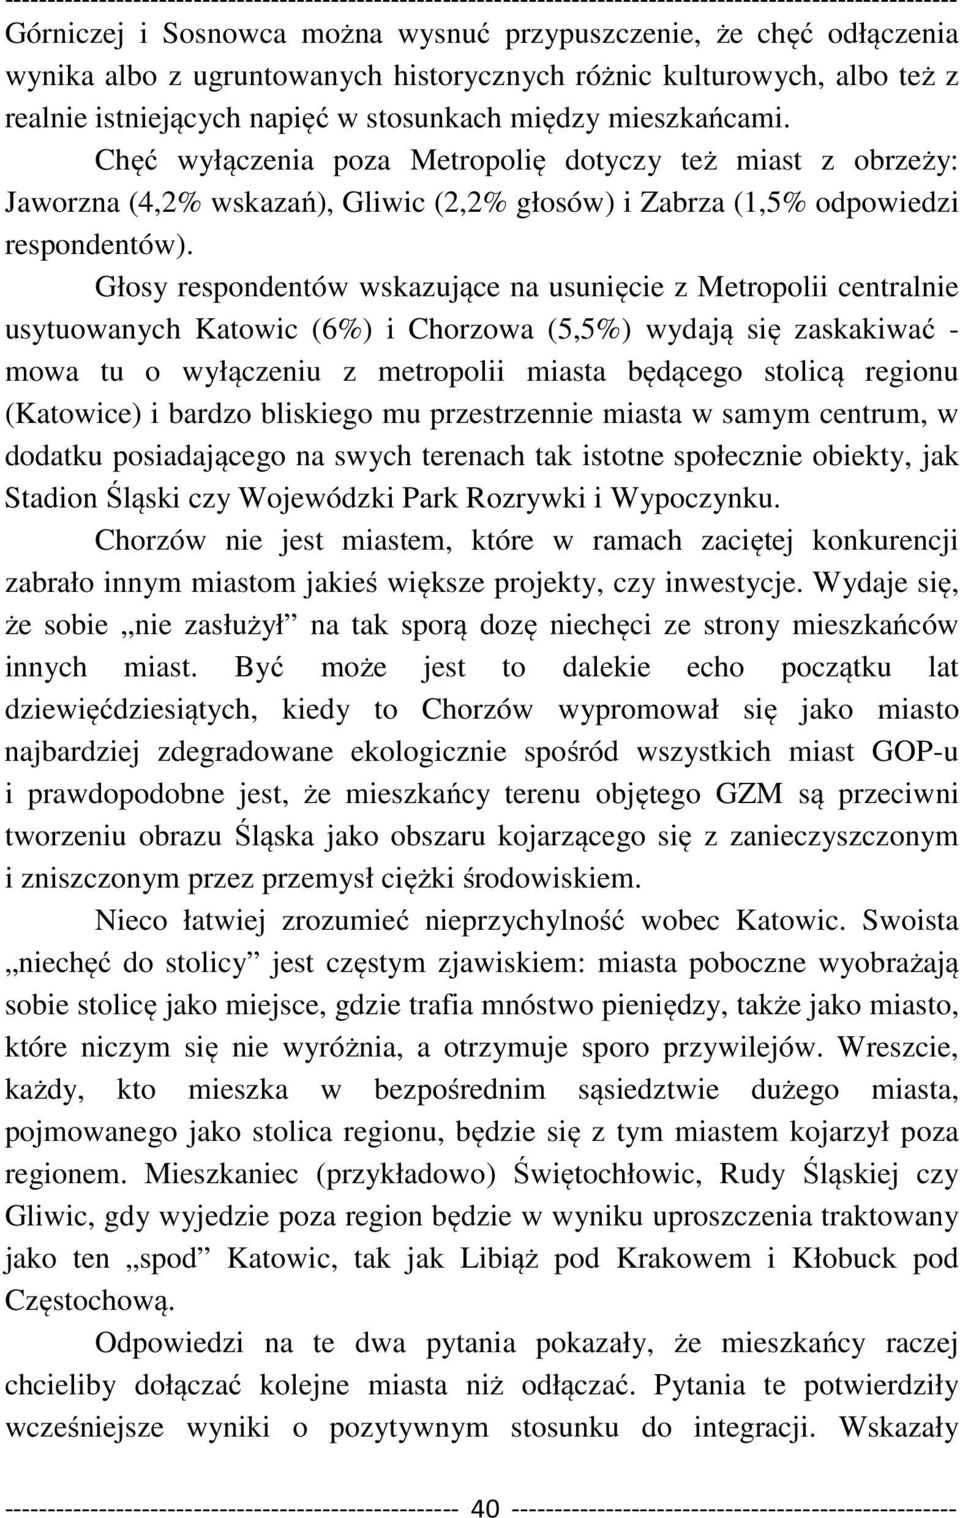 Głosy respondentów wskazujące na usunięcie z Metropolii centralnie usytuowanych Katowic (6%) i Chorzowa (5,5%) wydają się zaskakiwać - mowa tu o wyłączeniu z metropolii miasta będącego stolicą